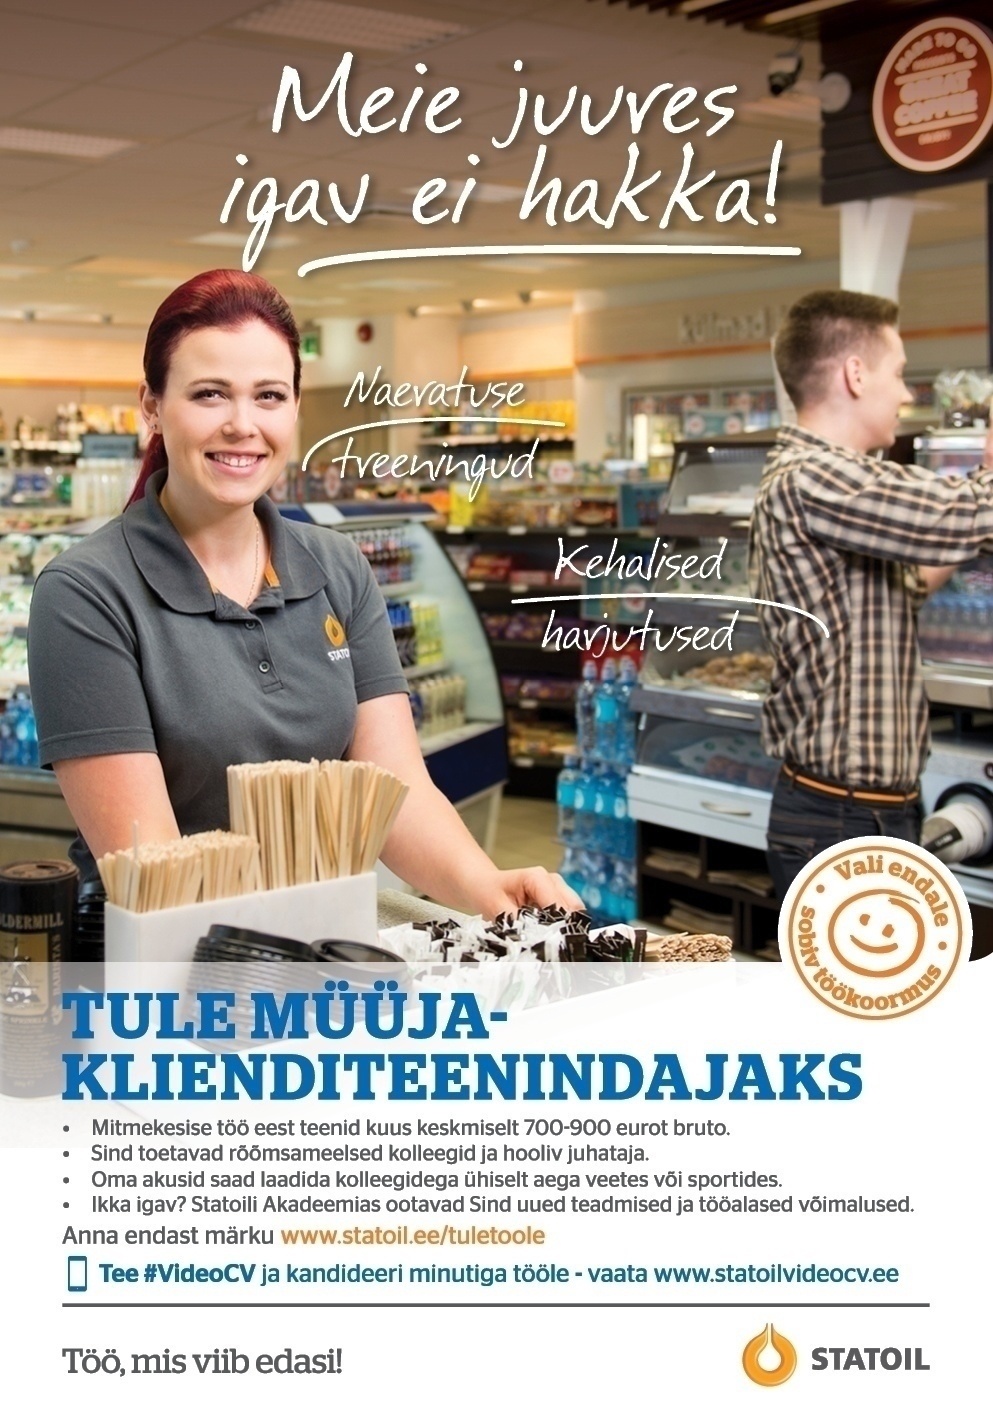 Circle K Eesti AS Müüja-klienditeenindaja osalise koormusega Mustvee teenindusjaama